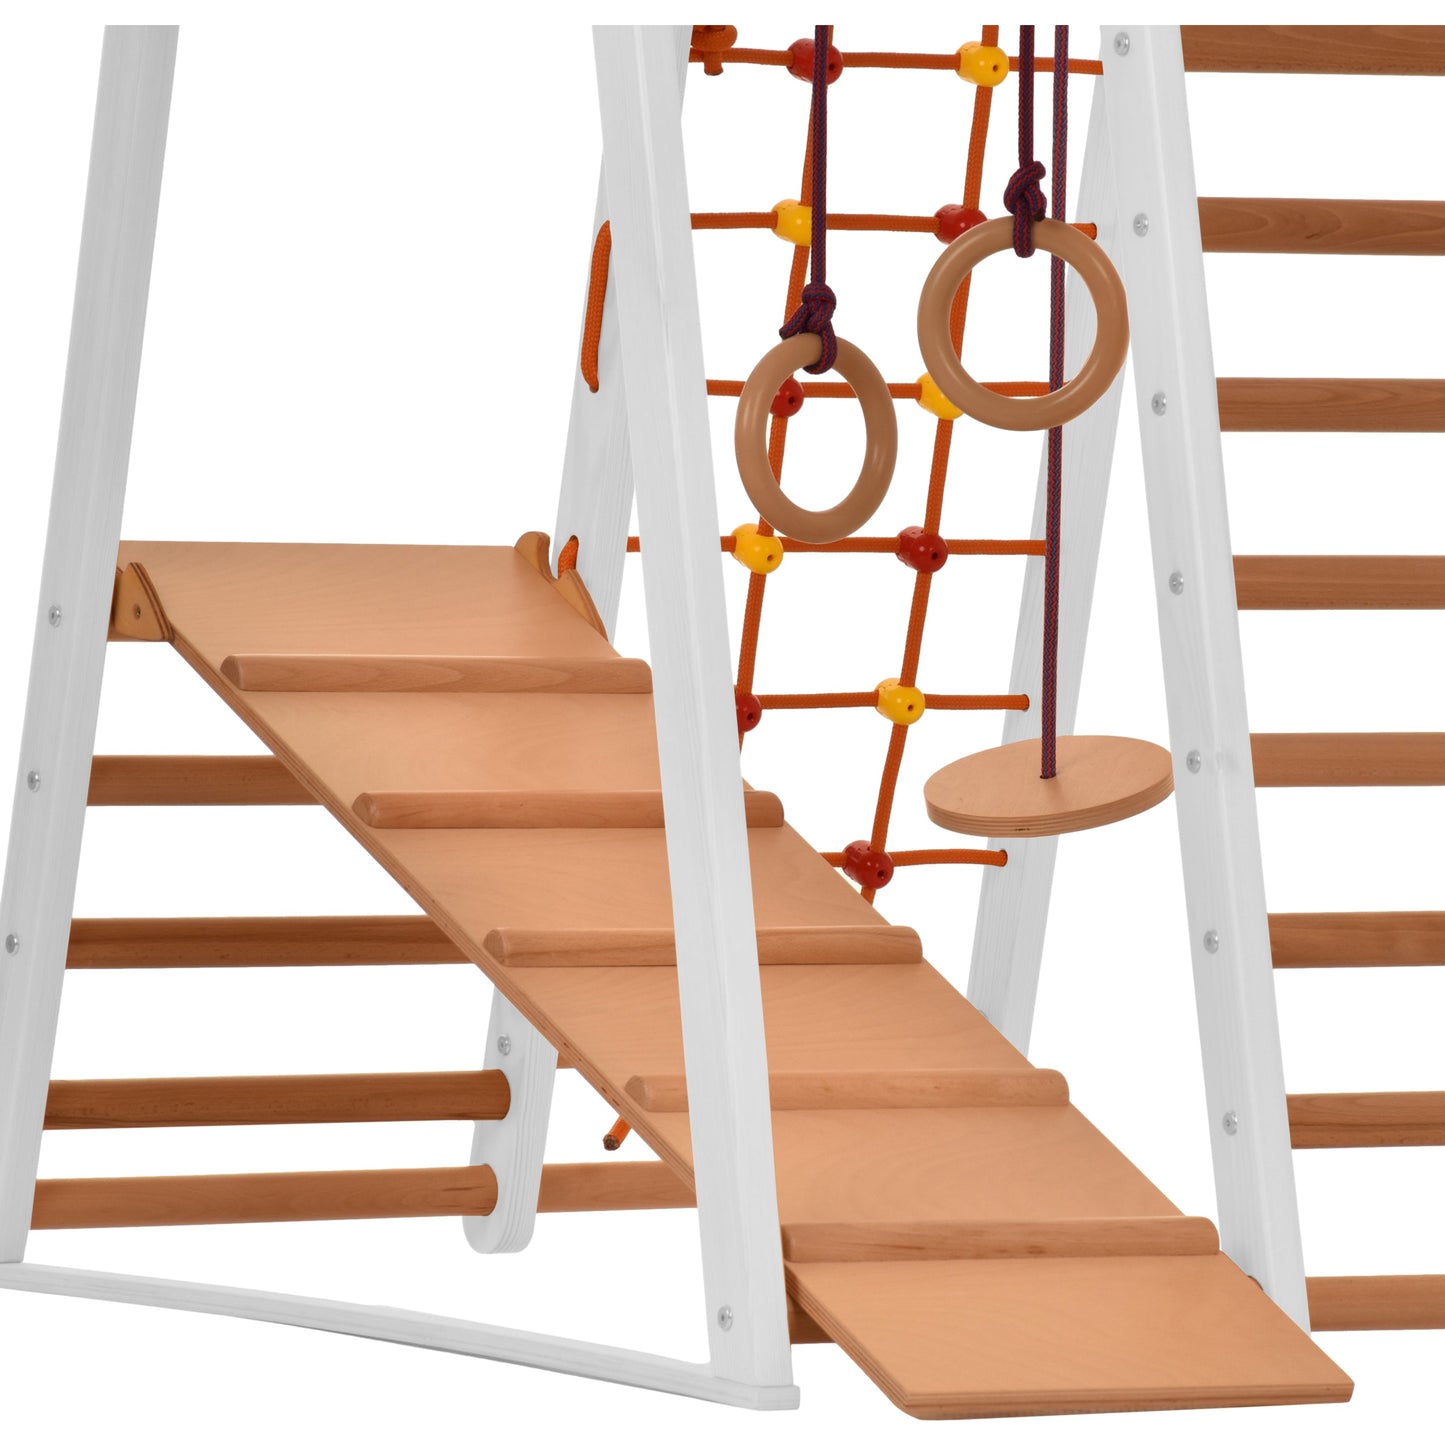 Kletterdreieck Indoor-Spielplatz aus Holz für Kinder - Kletternetz, schwedische Leiter, Ringe, Rutsche - Ideal für 1 bis 5 Jahre - Trägt (Weiß)